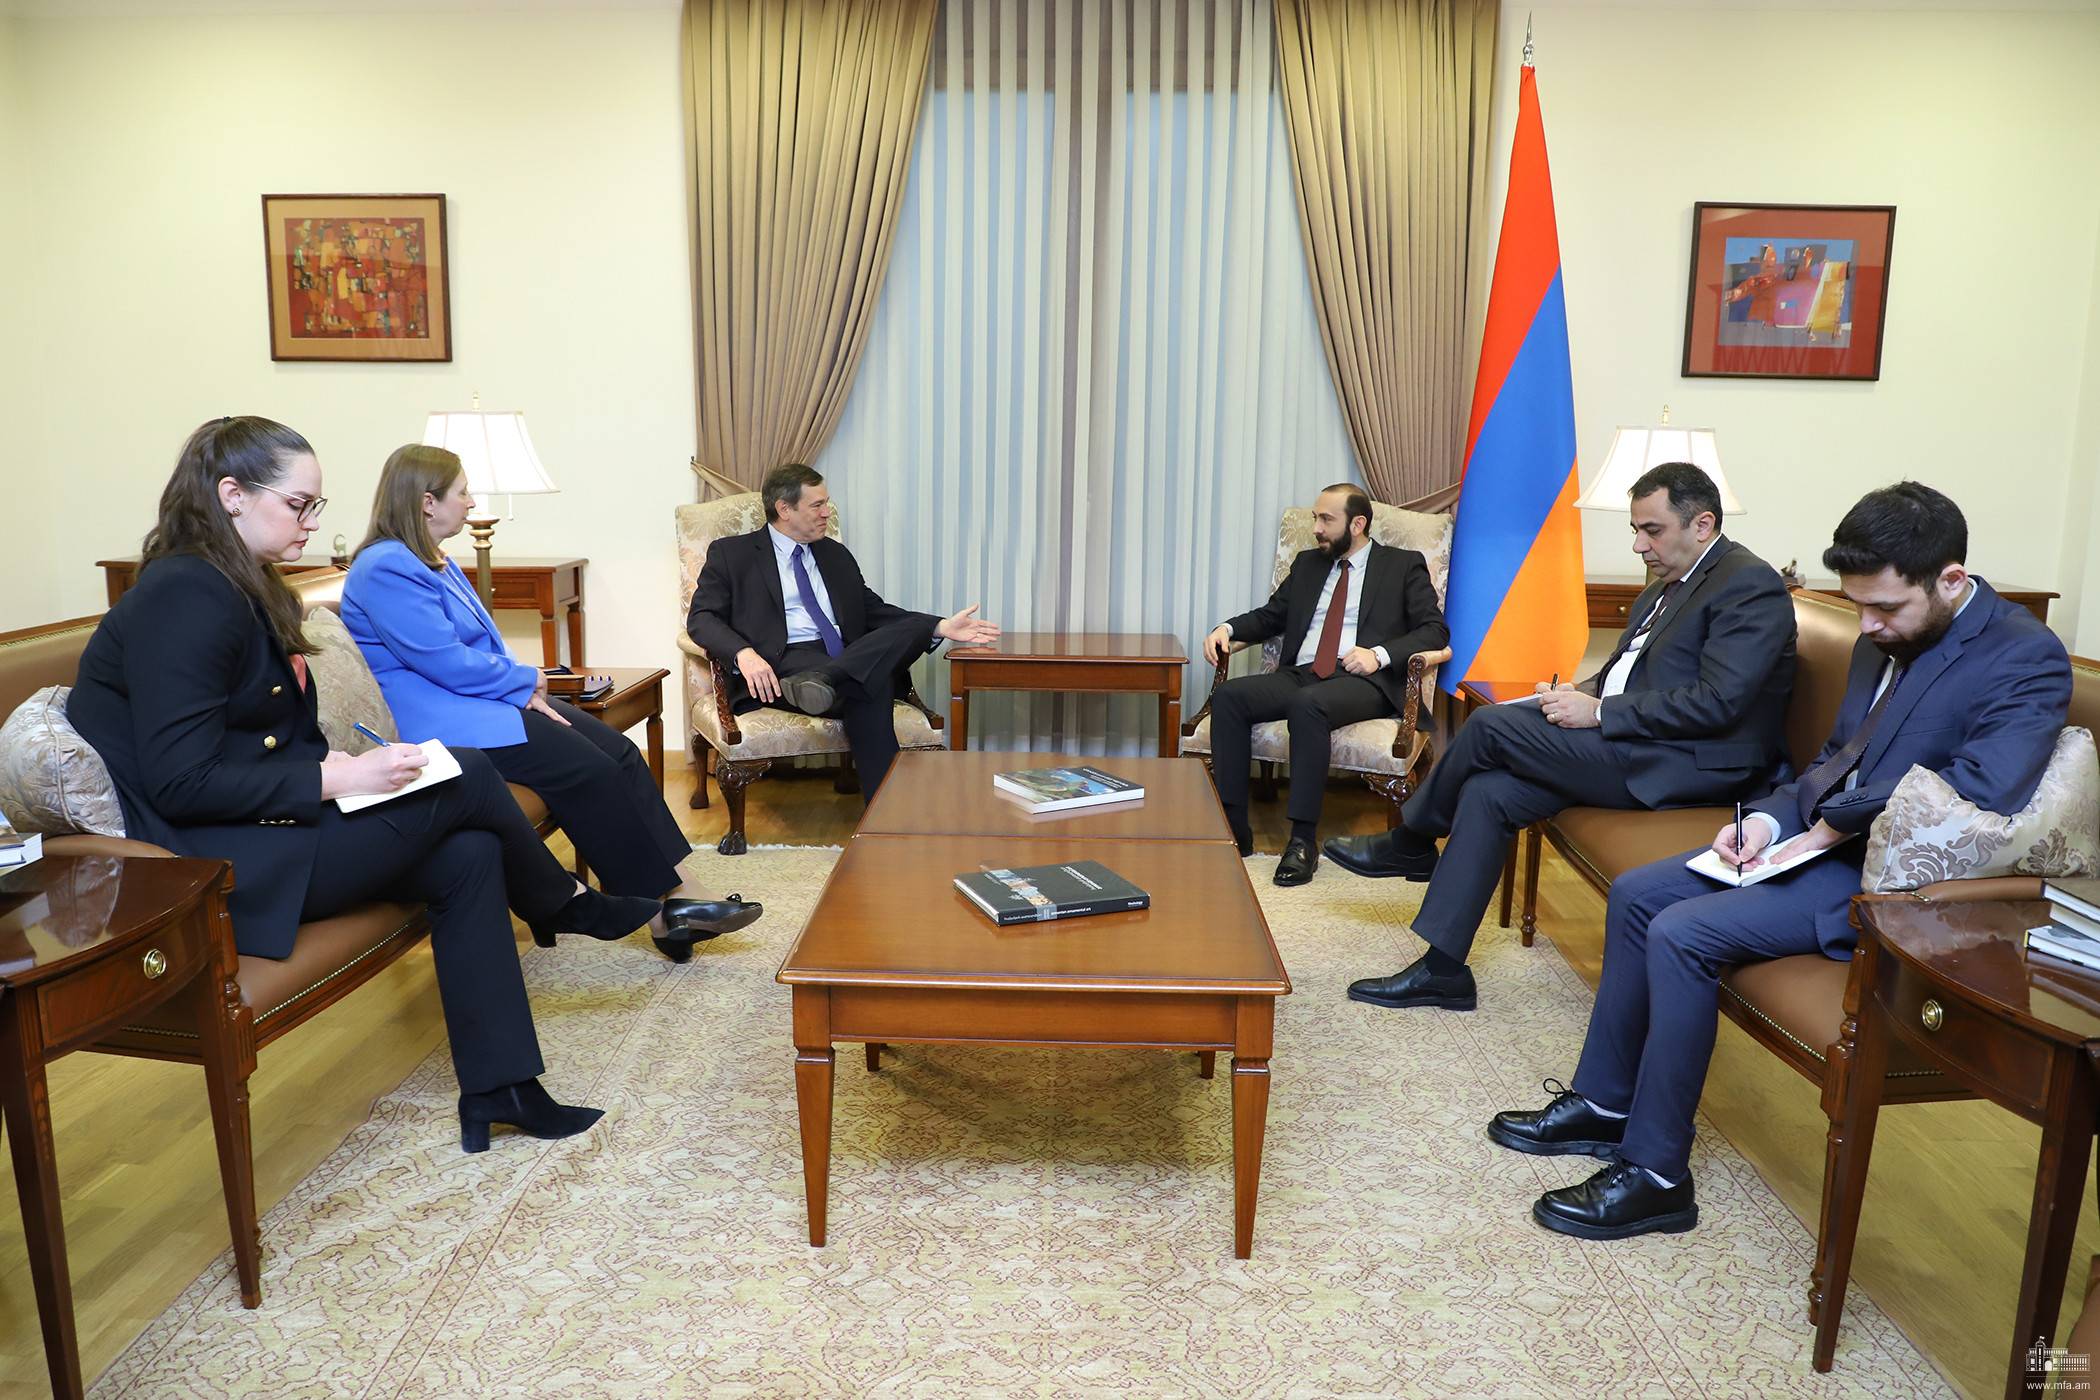 Сопредседатель Минской группы ОБСЕ от США Эндрю Шофер на встрече с министром иностранных дел Армении Араратом Мирзояном, 18 апреля 2022